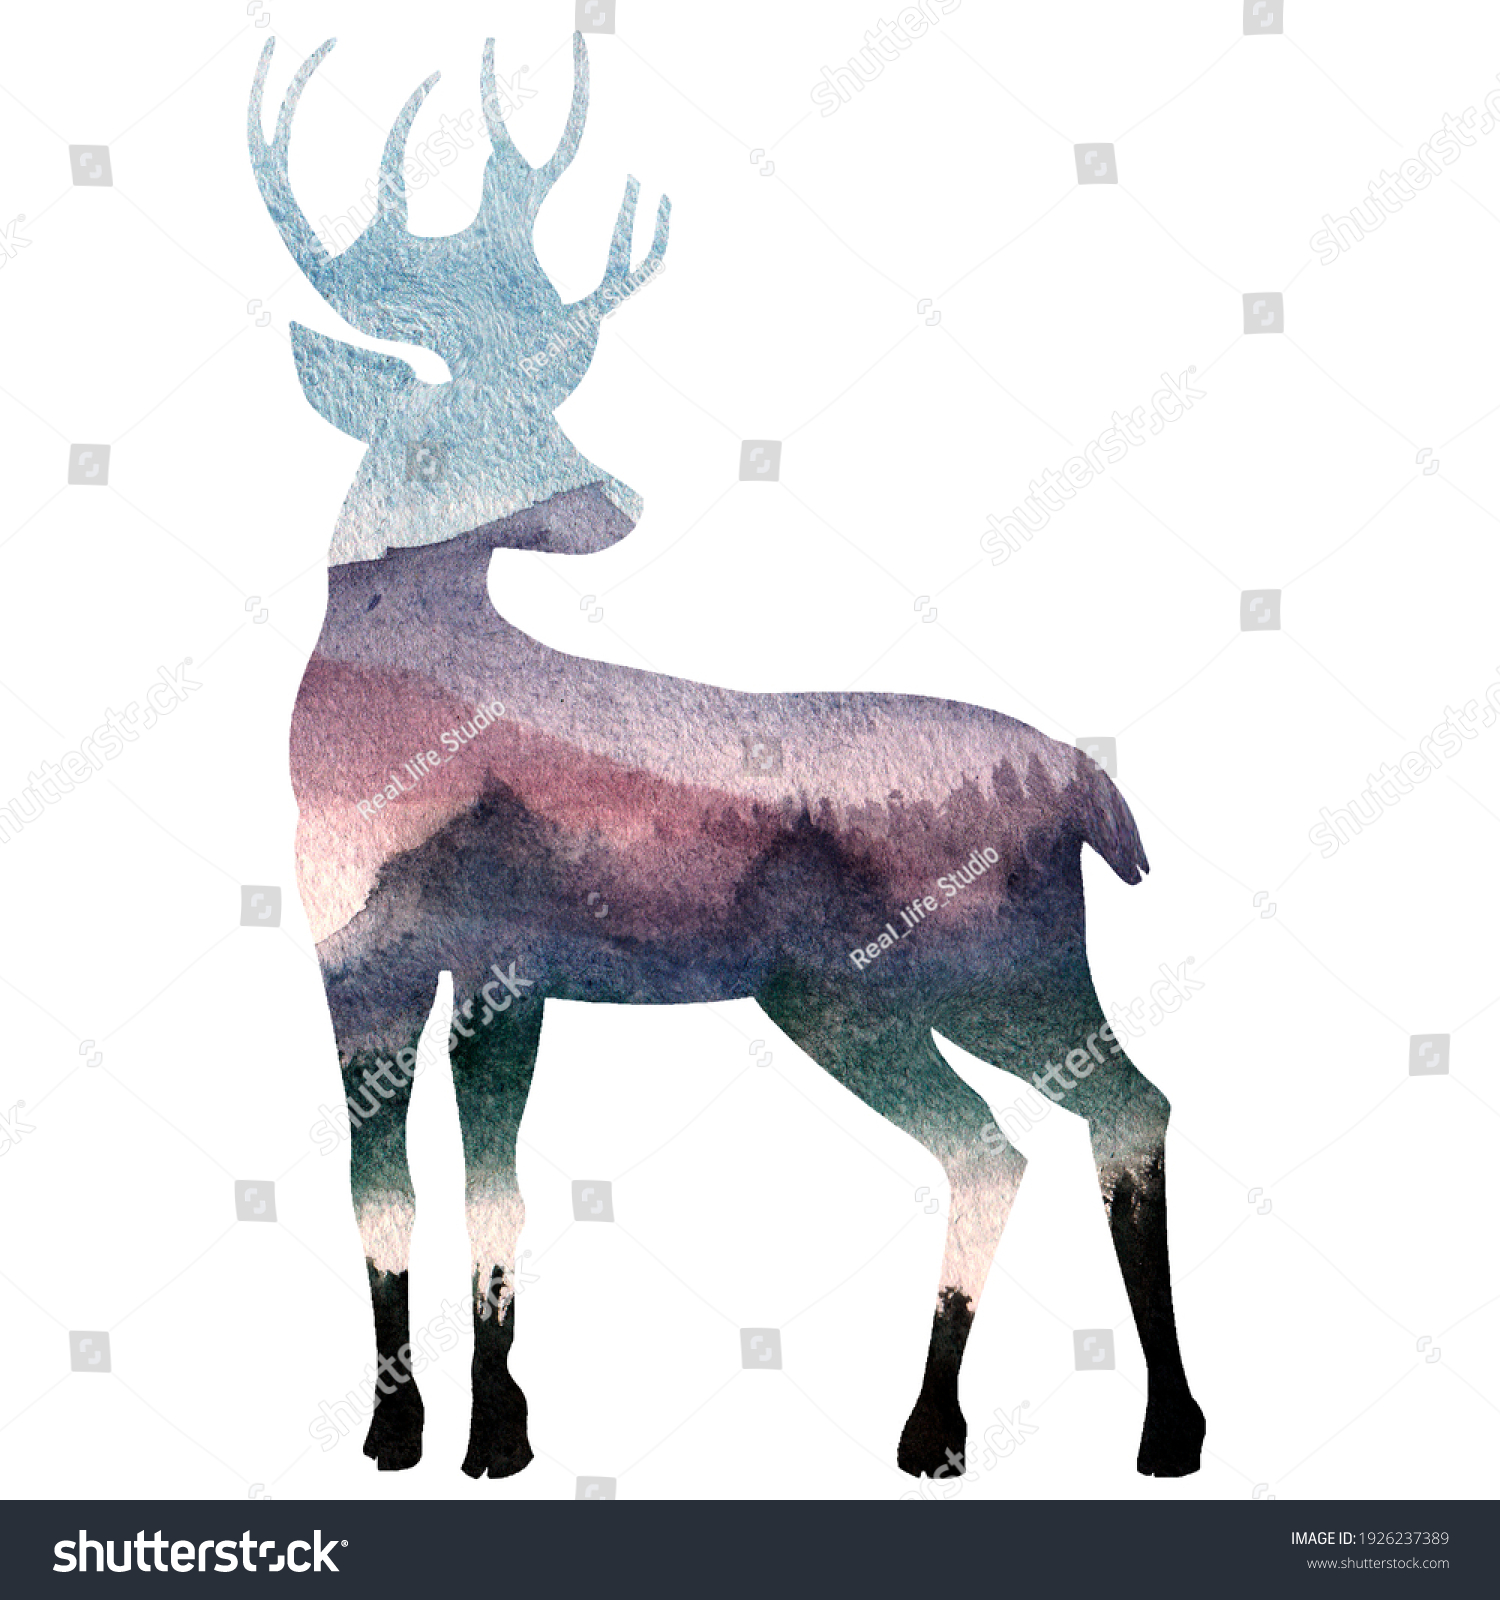 森の背景に鹿のシルエット 鹿 魚卵 森の孤立した輪郭 水彩イラスト デザイン 動物のポートレート 野生生物 のイラスト素材 Shutterstock